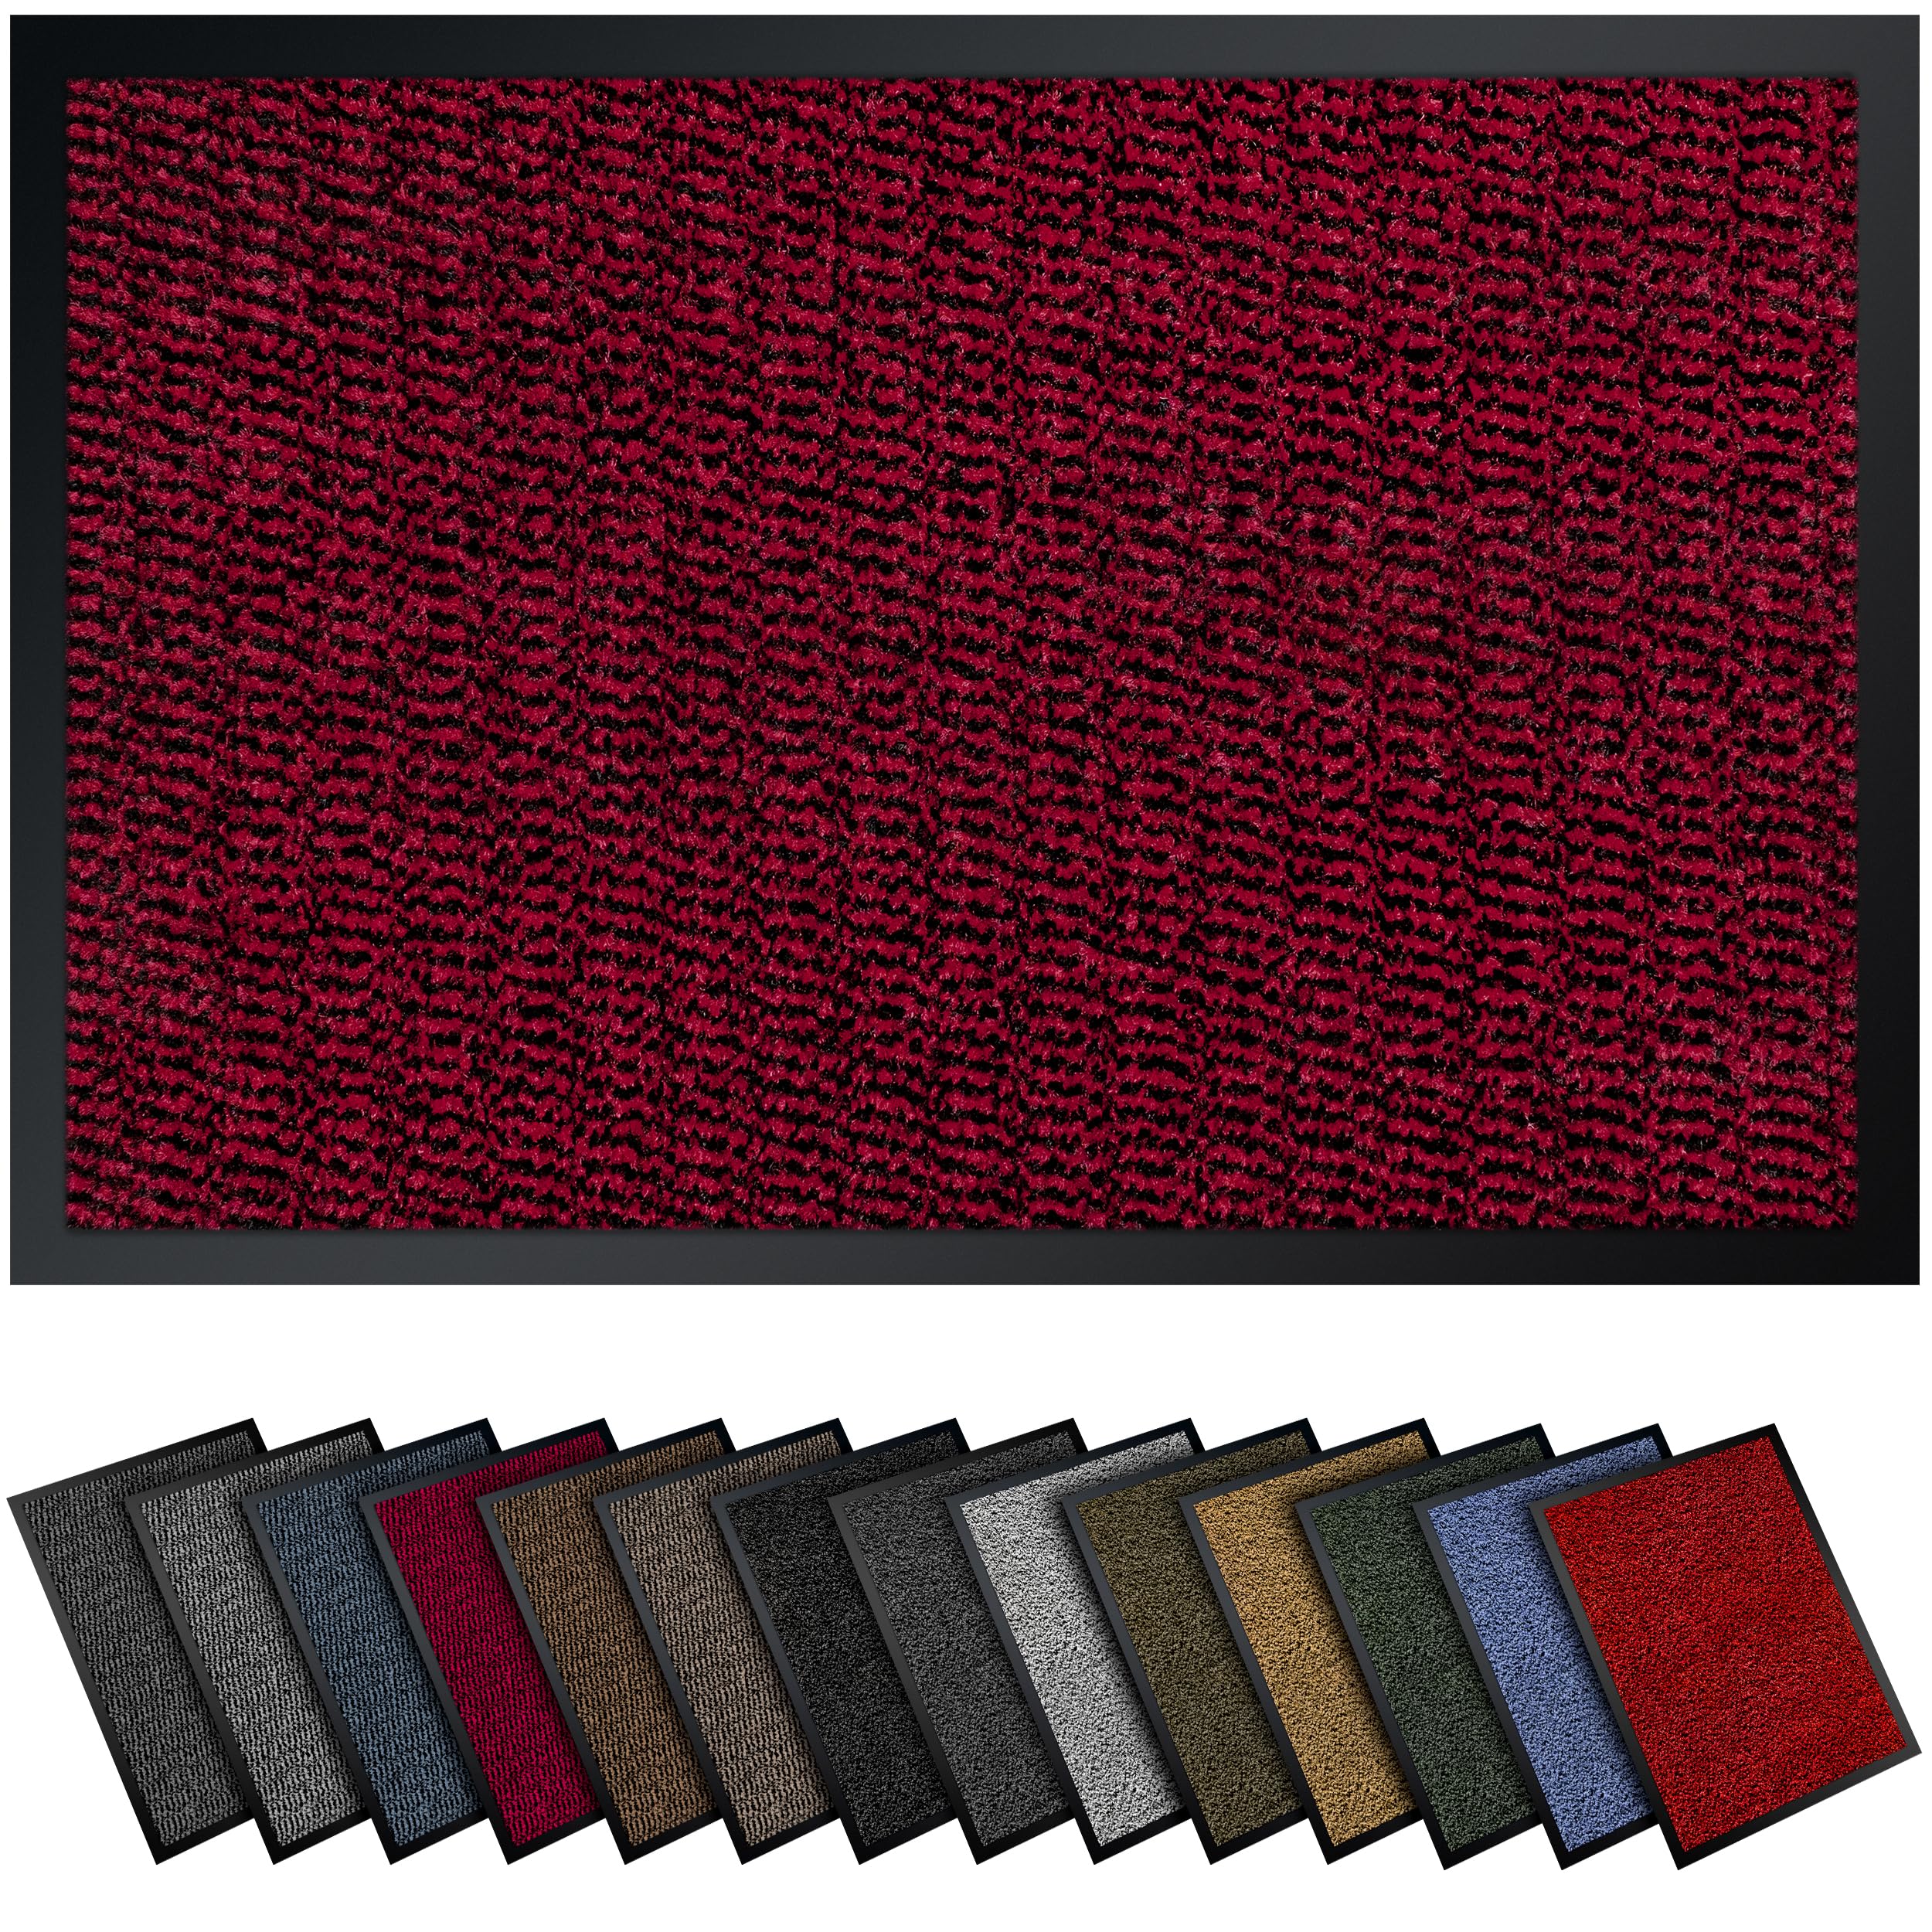 Gentle North Hochwertige Fußmatte rot schwarz 90x120cm groß für Innen & Außen - Schmutzfangmatte rutschfest, waschbar & wetterfest - Fussmatte für Eingangsbereich & Aussenbereich - Läufer Flur dünn